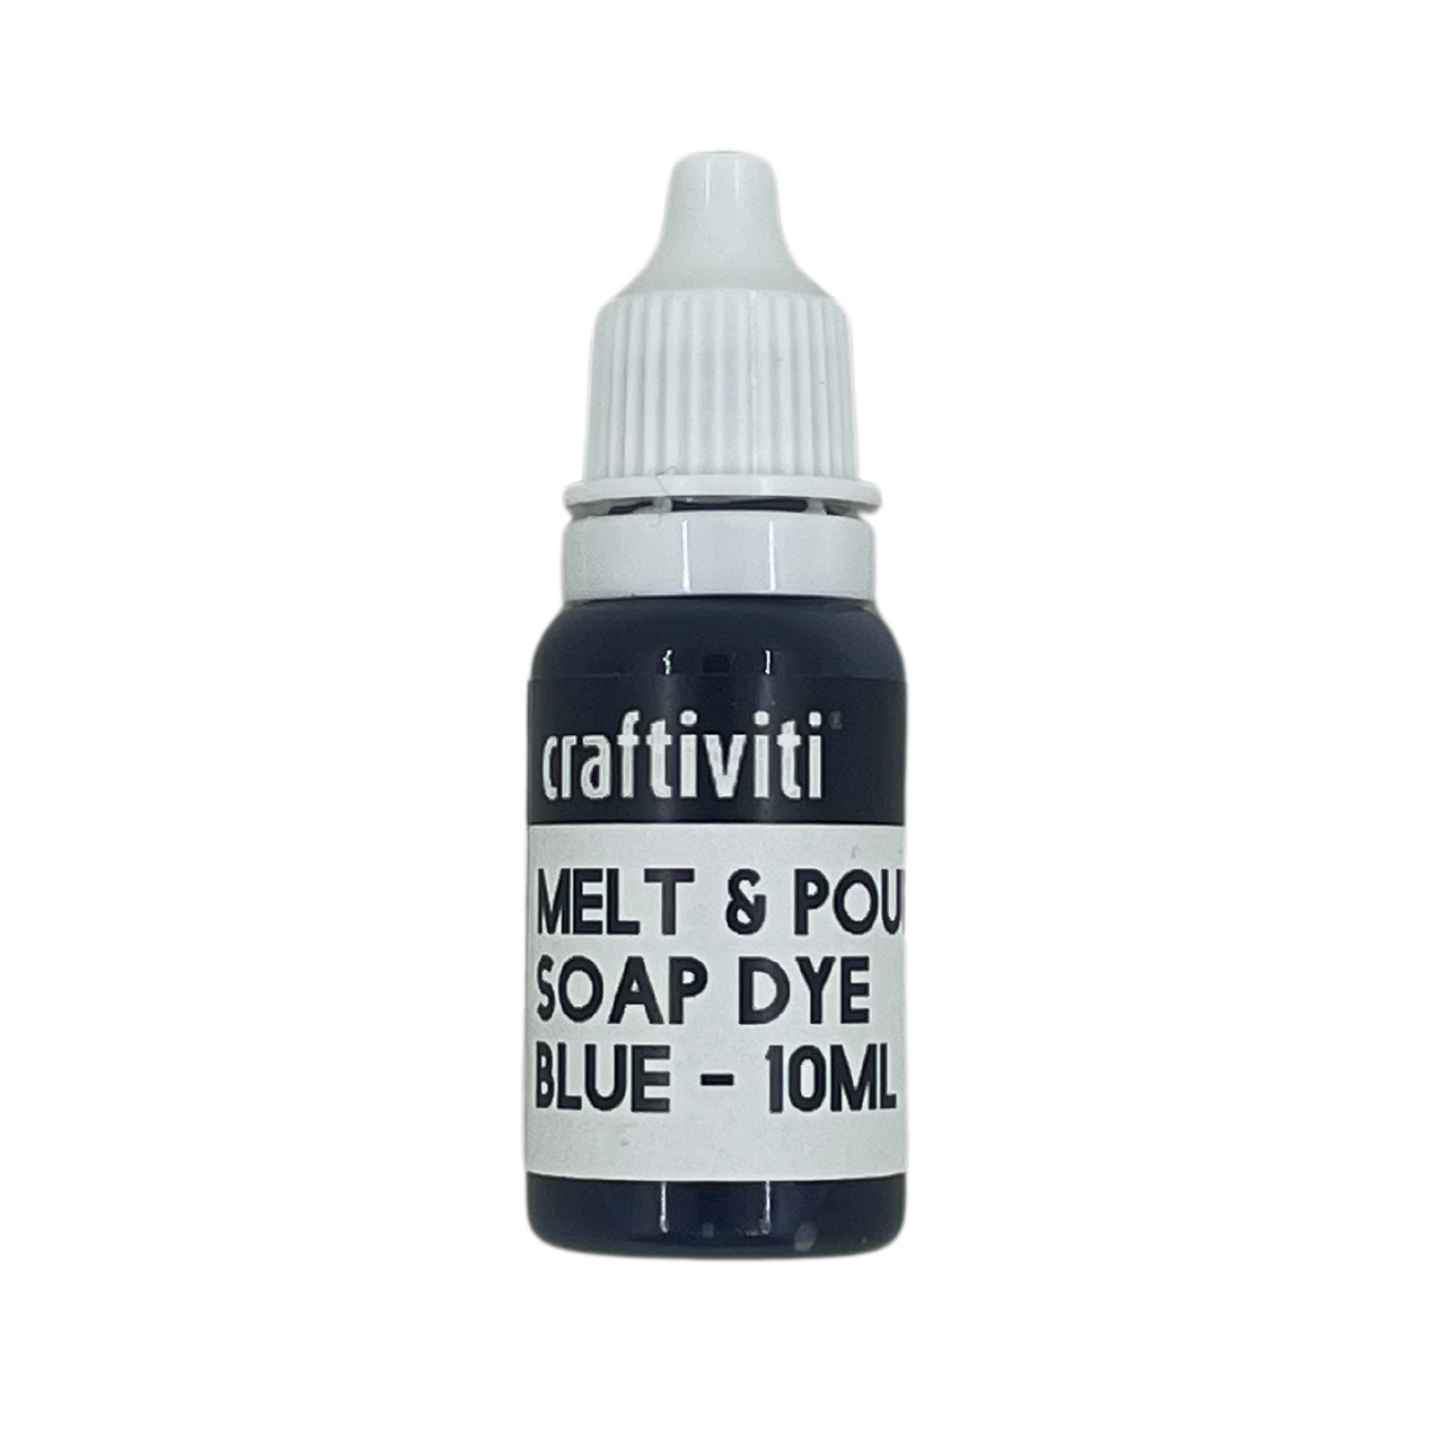 Melt & Pour Soap Dye - 10ml - Blue